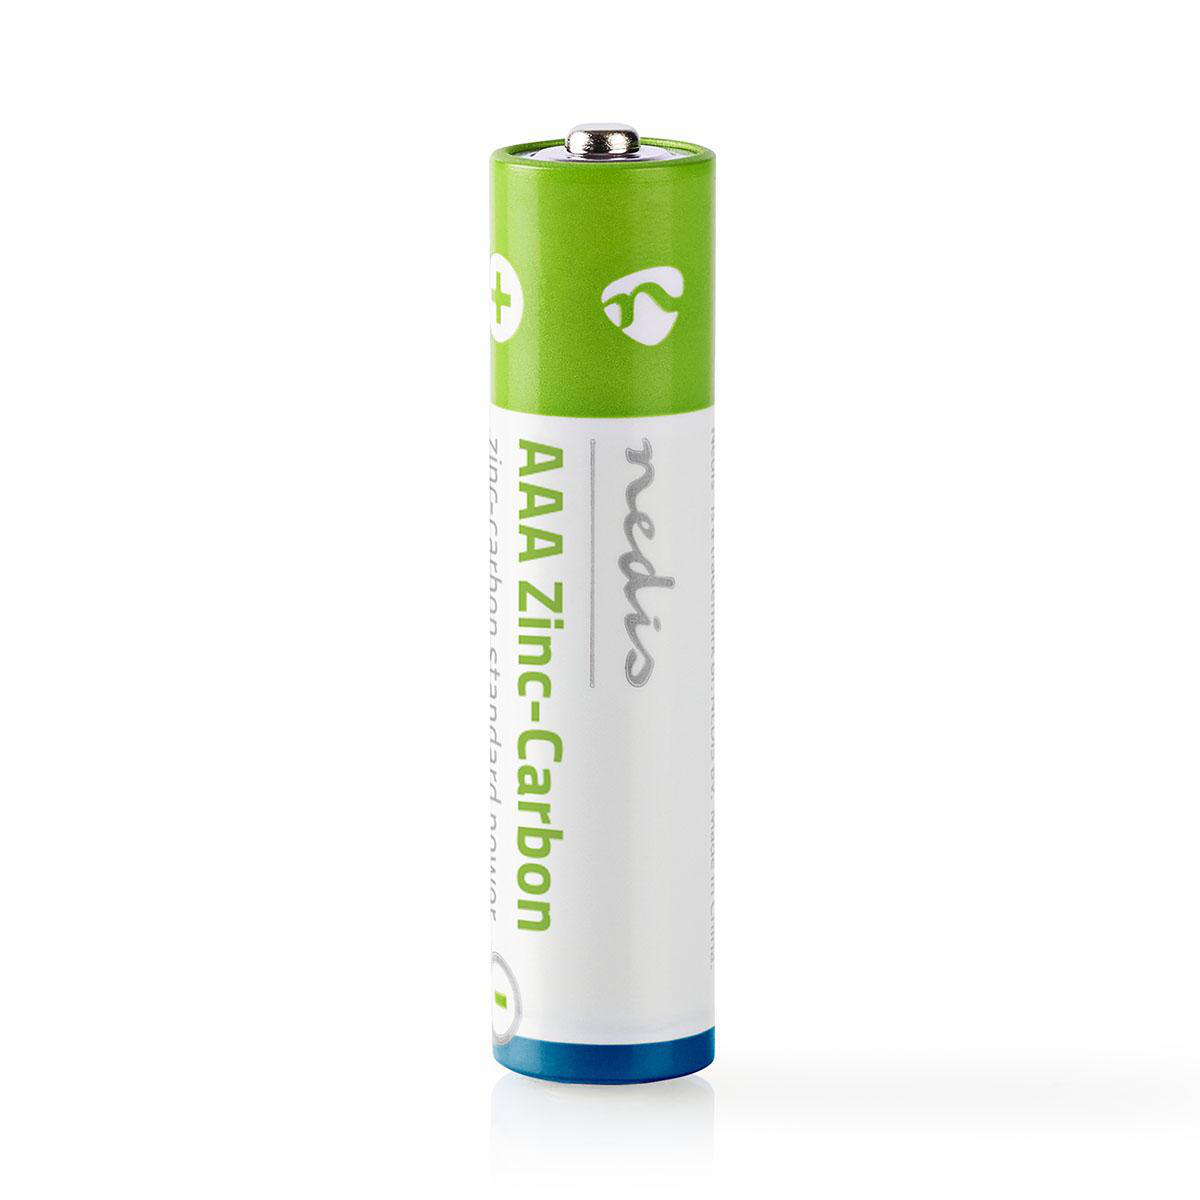 Aaa battery. Carbon Zinc Battery батарейки. Zinc Carbon батарейки aaar03. AAA И AA батарейки Zinc Carbon. Dian ba Carbon Battery мизинчиковые.